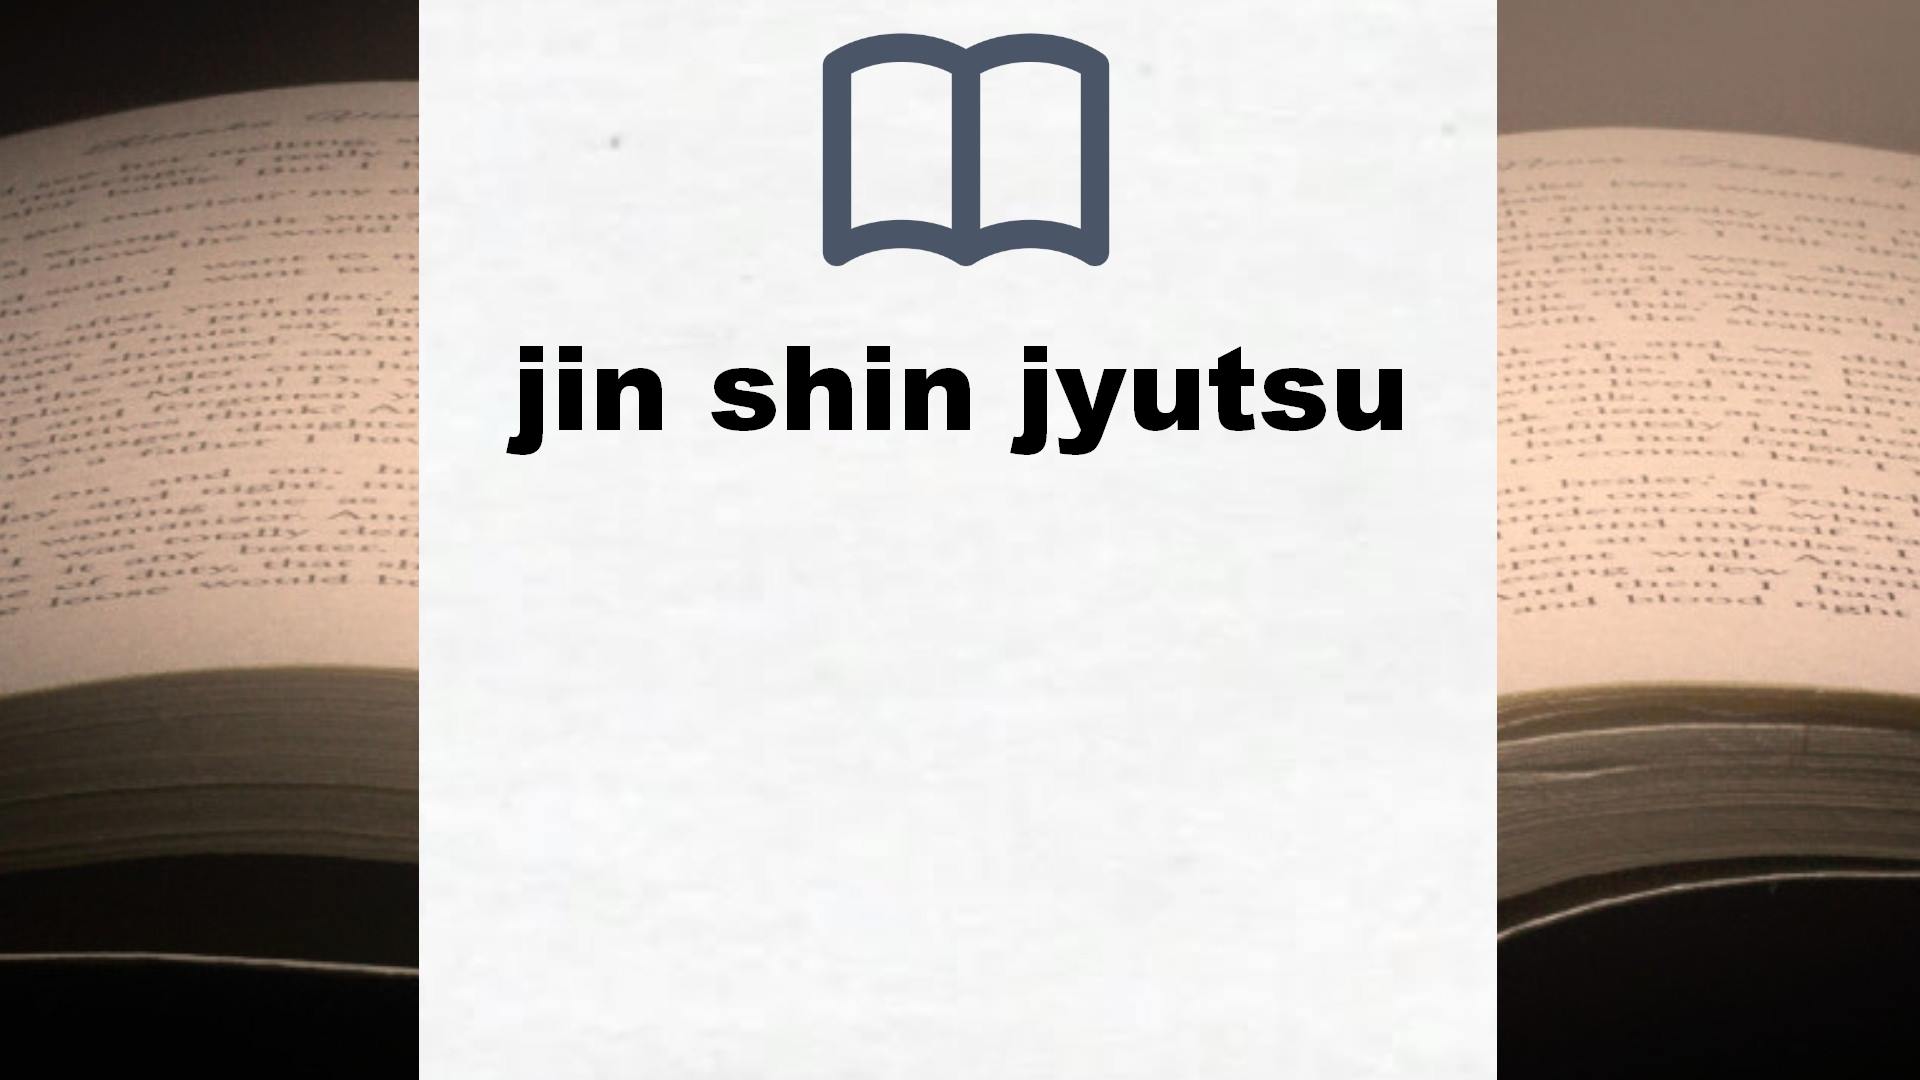 Libros sobre jin shin jyutsu